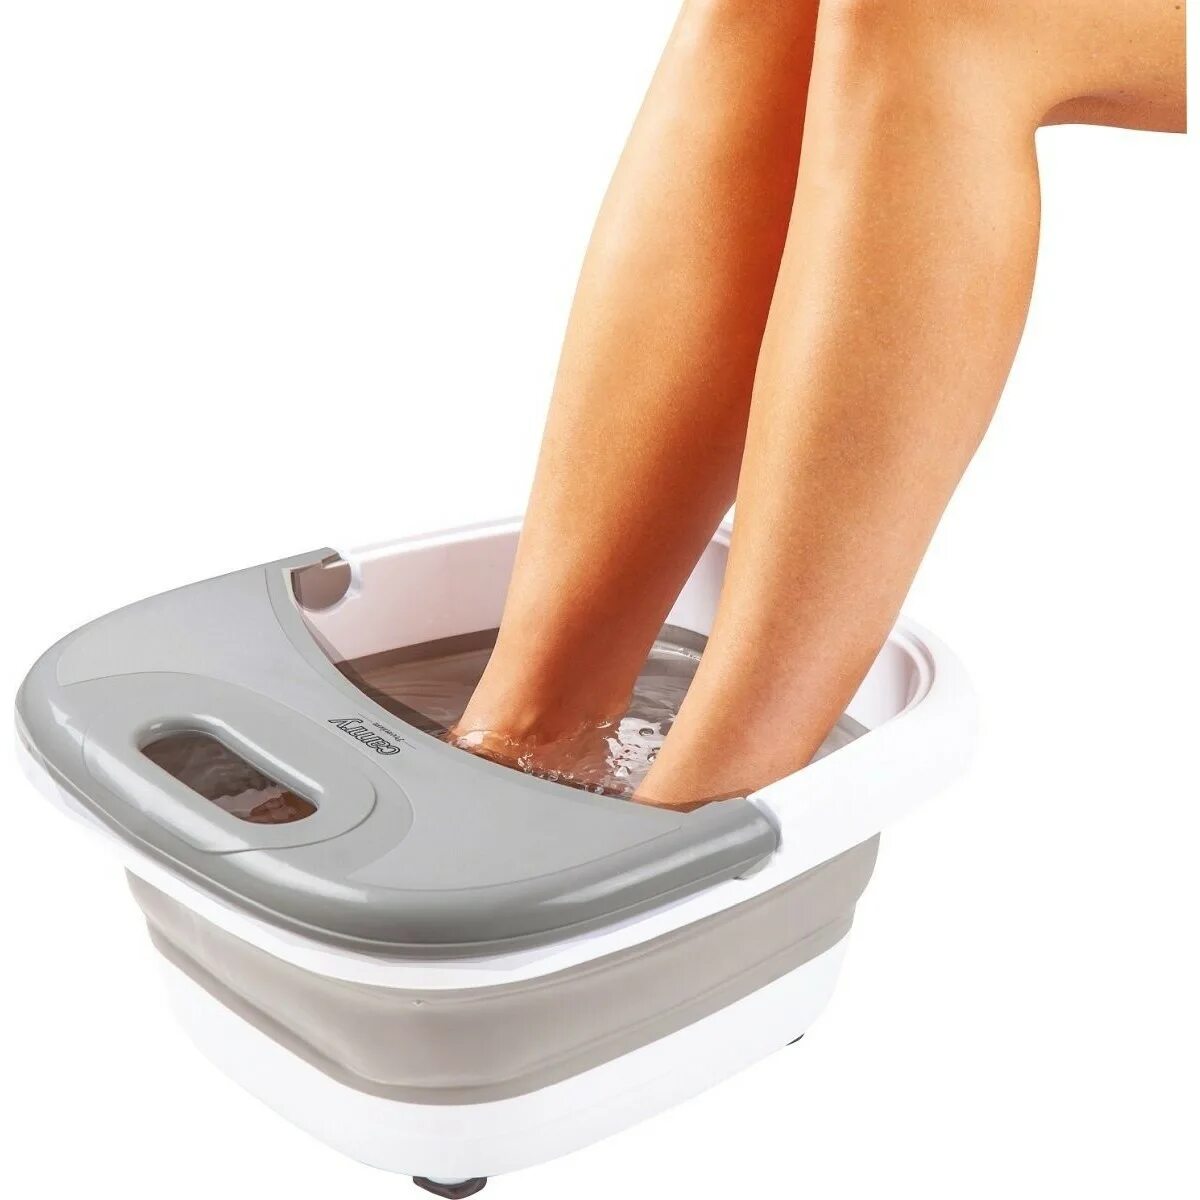 Электрическая ванночка. Ванночка для ног ECON Eco-fs102. Гидромассажер для ног Xiaomi. Ванночка массажер для ног. Ванночка для ног электрическая с массажем.